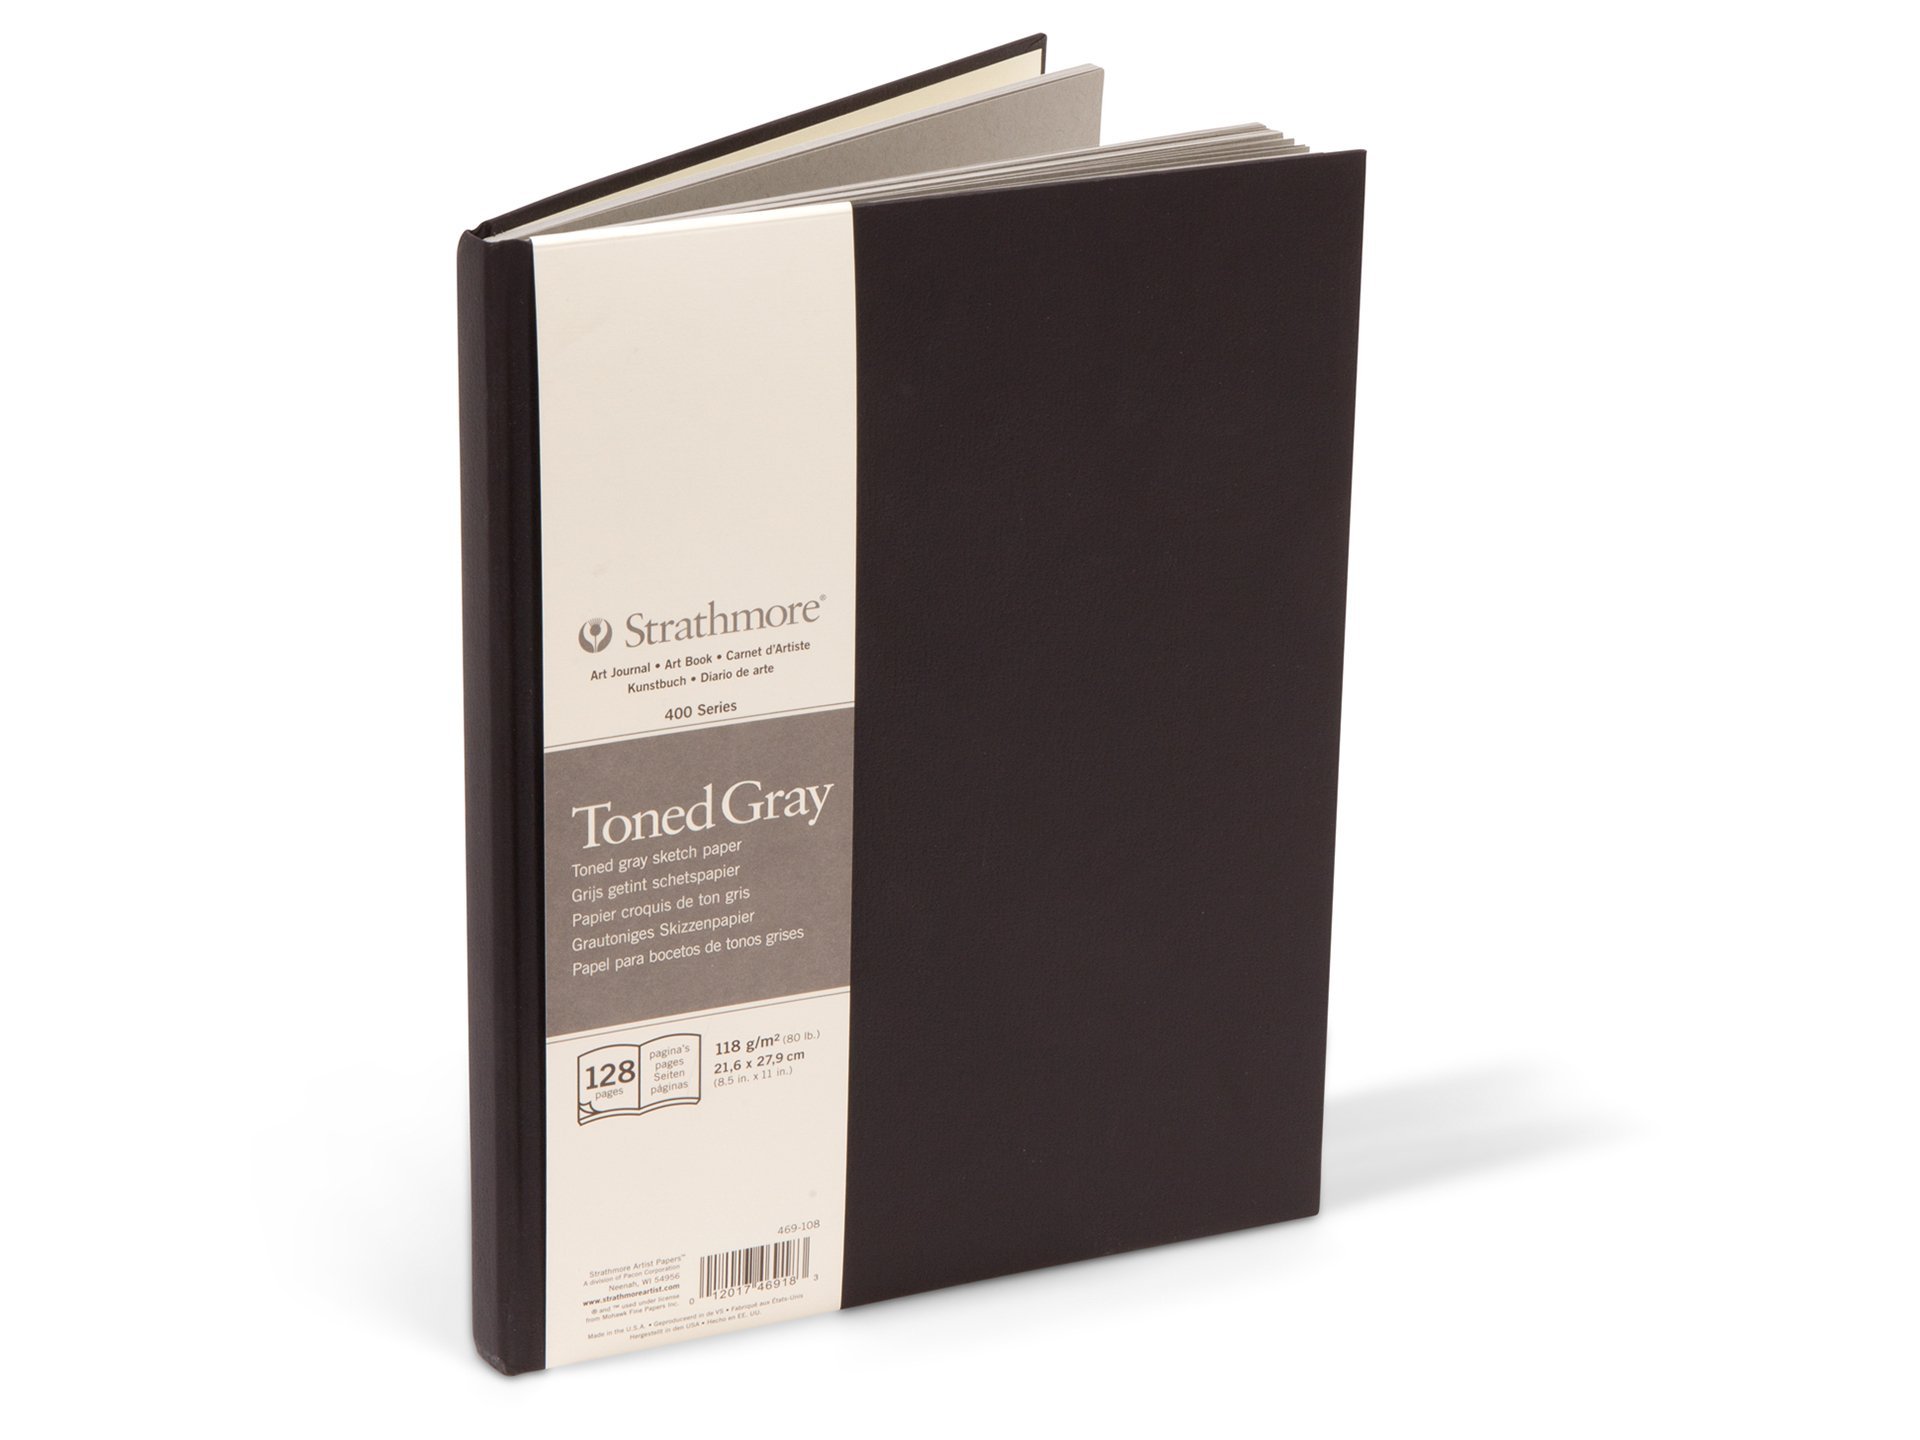 cuaderno de dibujo libreta en blanco para dibujar sketchbook 8.5